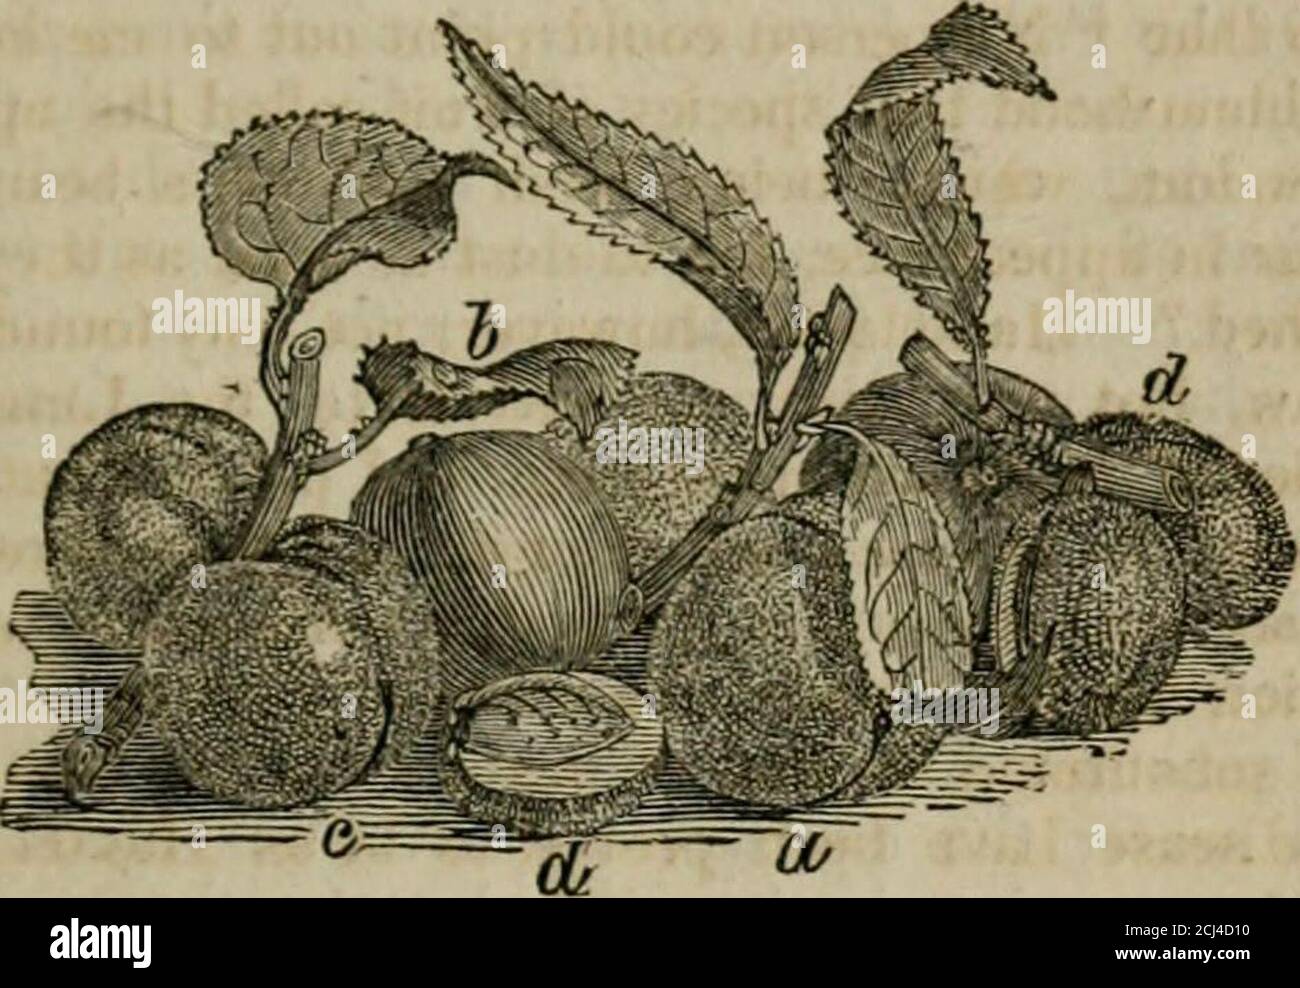 . Eine Beschreibung und Geschichte der pflanzlichen Stoffe, in der Kunst verwendet, und in der heimischen Wirtschaft . verwies es auf die Linnaeanspecies von Solaninn meloiigena, und wies auf die Ursache der Krankheit; Und obwohl, in der recentand genaue Teilung der Gattung Solamim, zu daser Anspielung gemacht worden ist, der Name von Sodomeum für den von melongena ersetzt worden ist, sind die Frucht und die Krankheit bewiesen worden, wie Hasselquiststatted zu sein. Solanum melongena ist in den mar-kets von Konstantinopel häufiger als eine der früheren Arten, wobei fast so reichlich wie der Kürbis und die Melone, und verwendet für Stockfoto